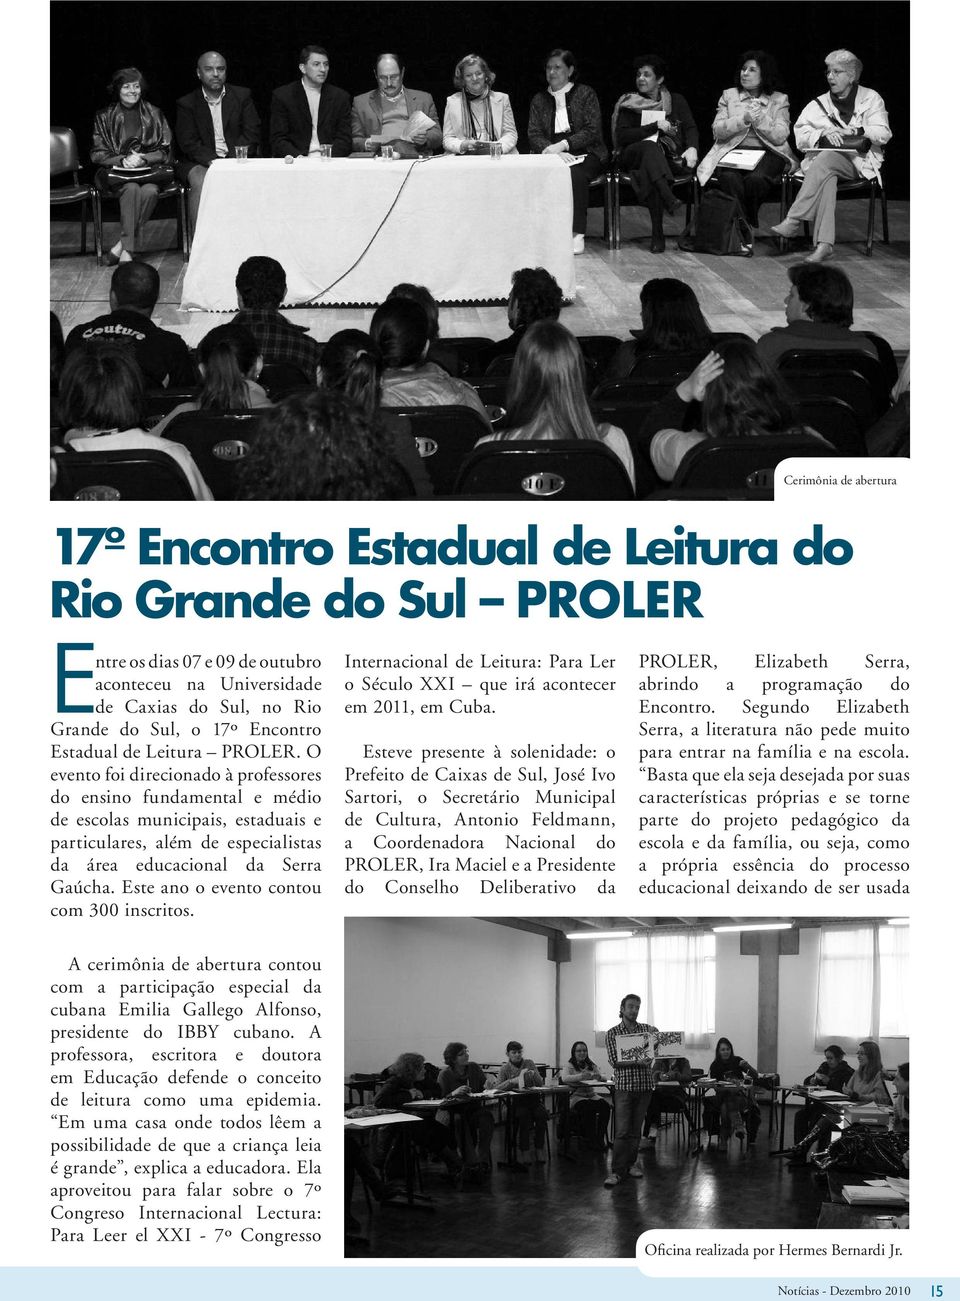 O evento foi direcionado à professores do ensino fundamental e médio de escolas municipais, estaduais e particulares, além de especialistas da área educacional da Serra Gaúcha.